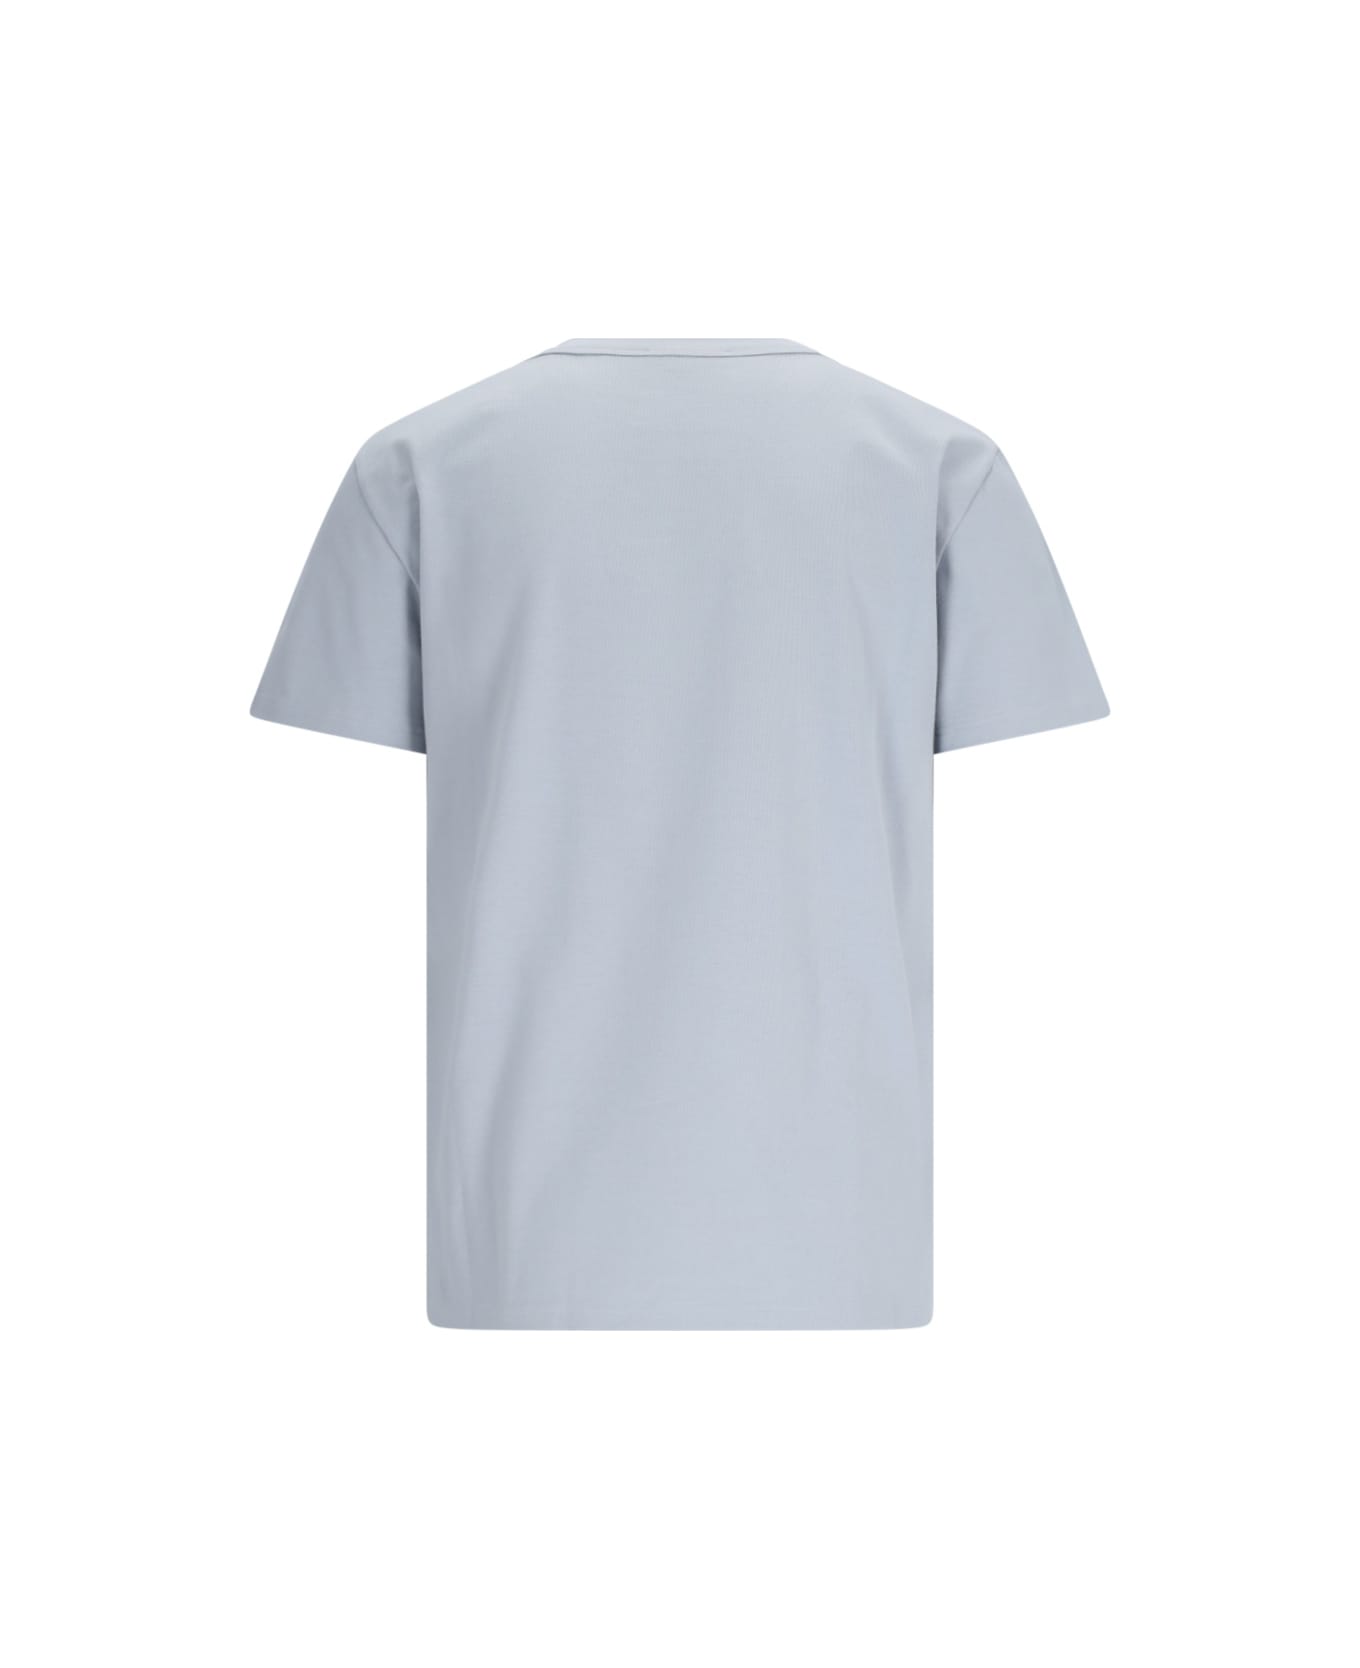 Alexander McQueen T-shirt - Grey